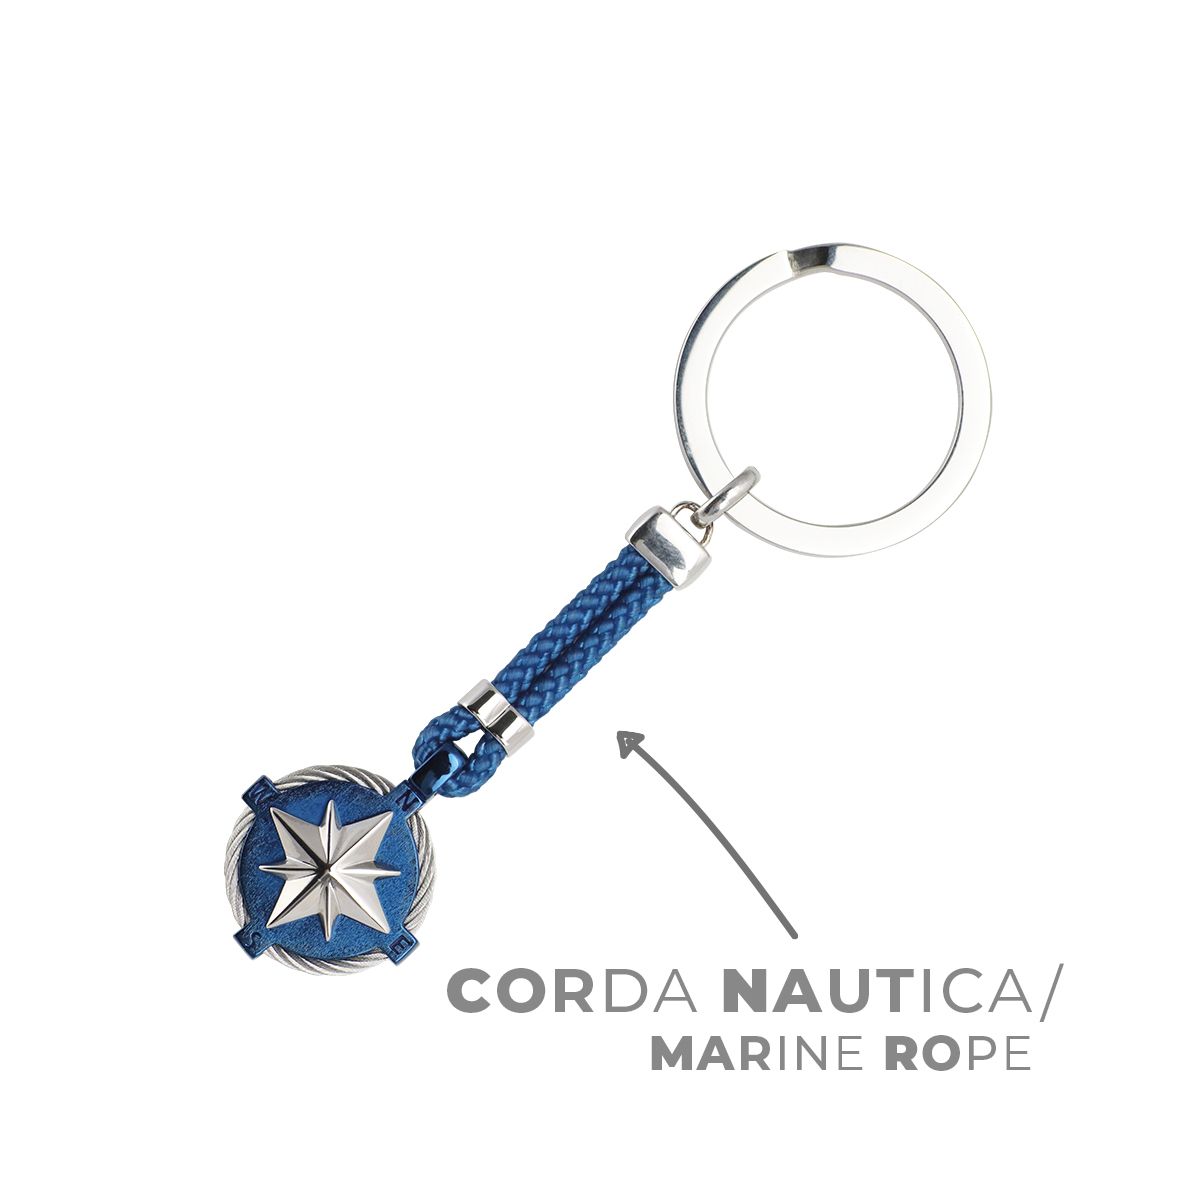 corda nautica - marine rope